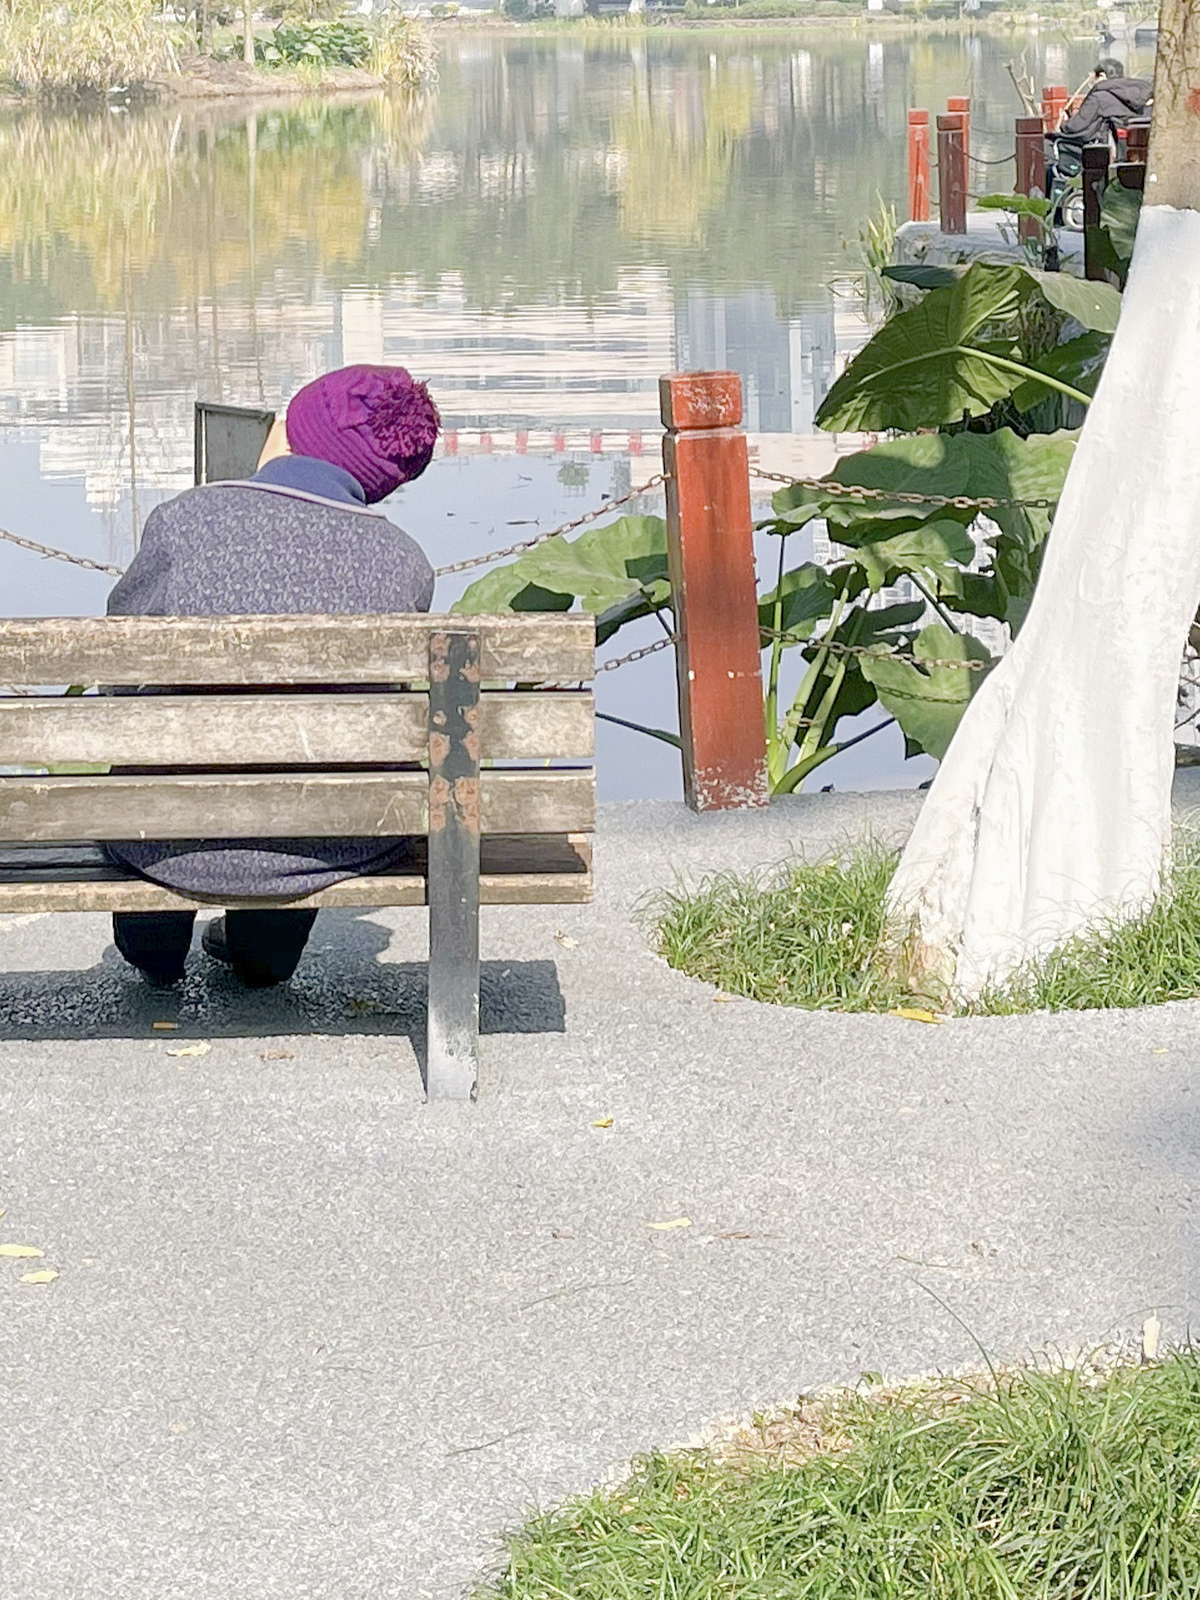 一些人在一个长椅上 一个男性和一个女性 面对着一个水塘。